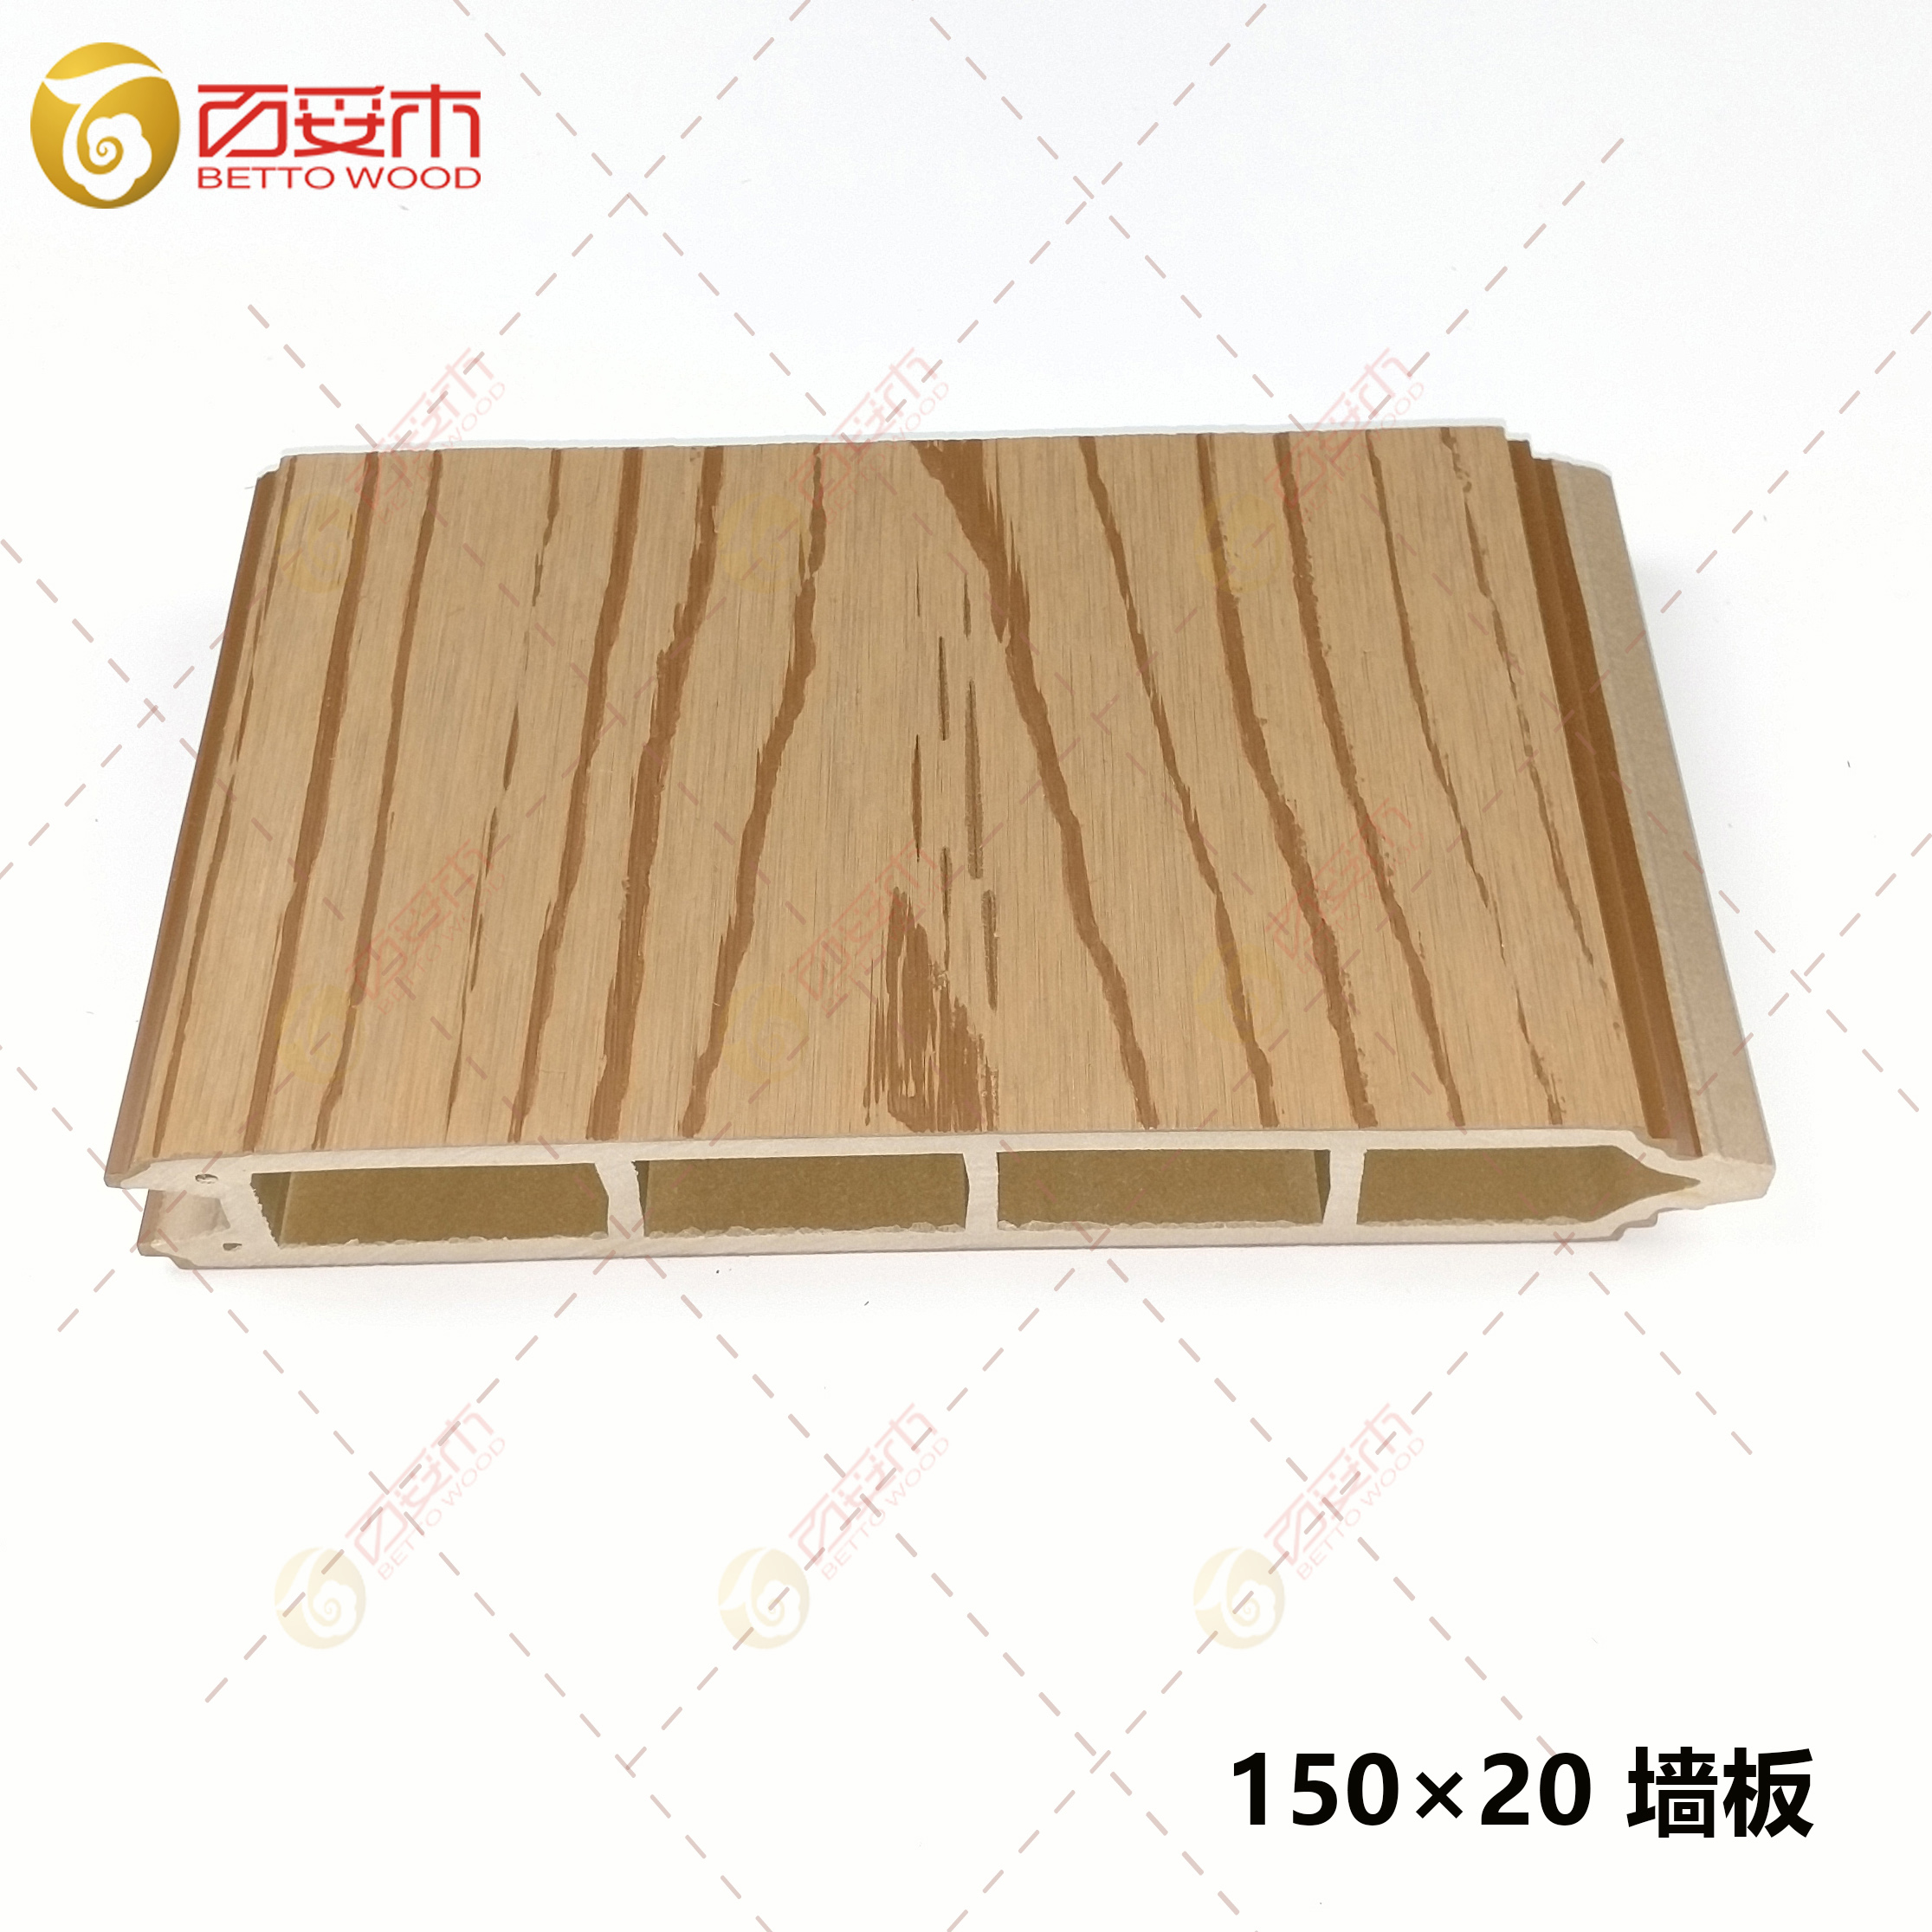 150-2塑木双面外墙板1